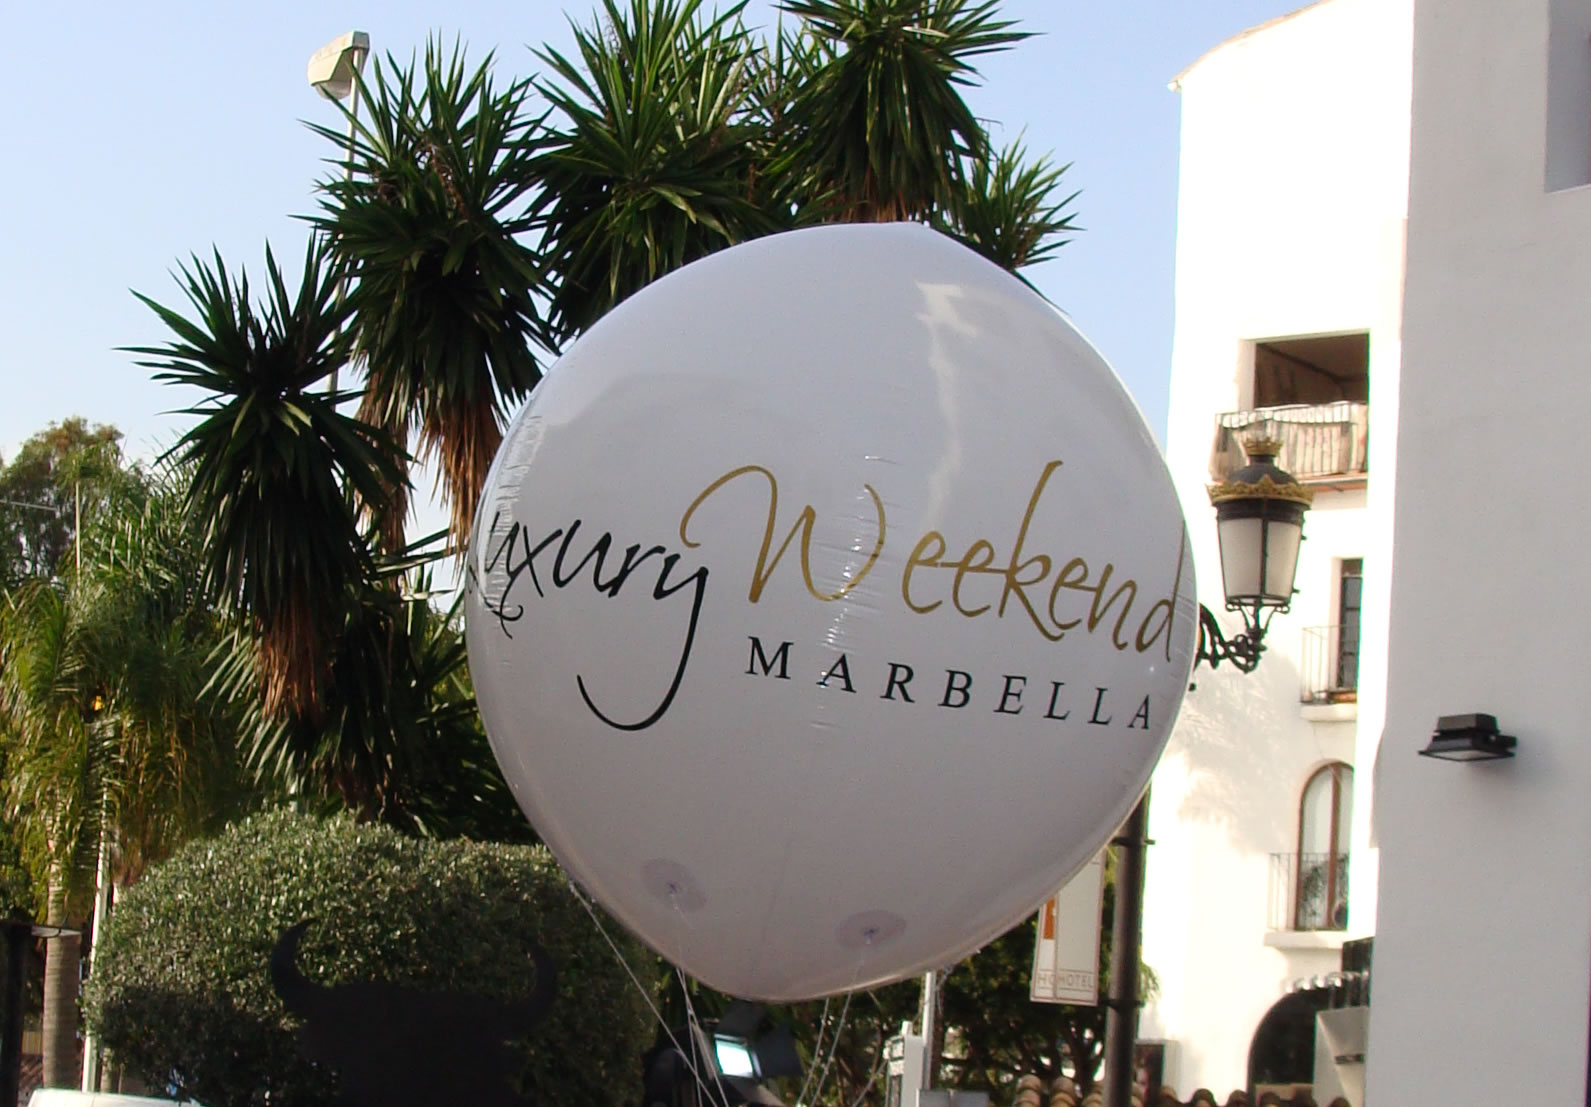 Marbella Luxury Weekend 2014